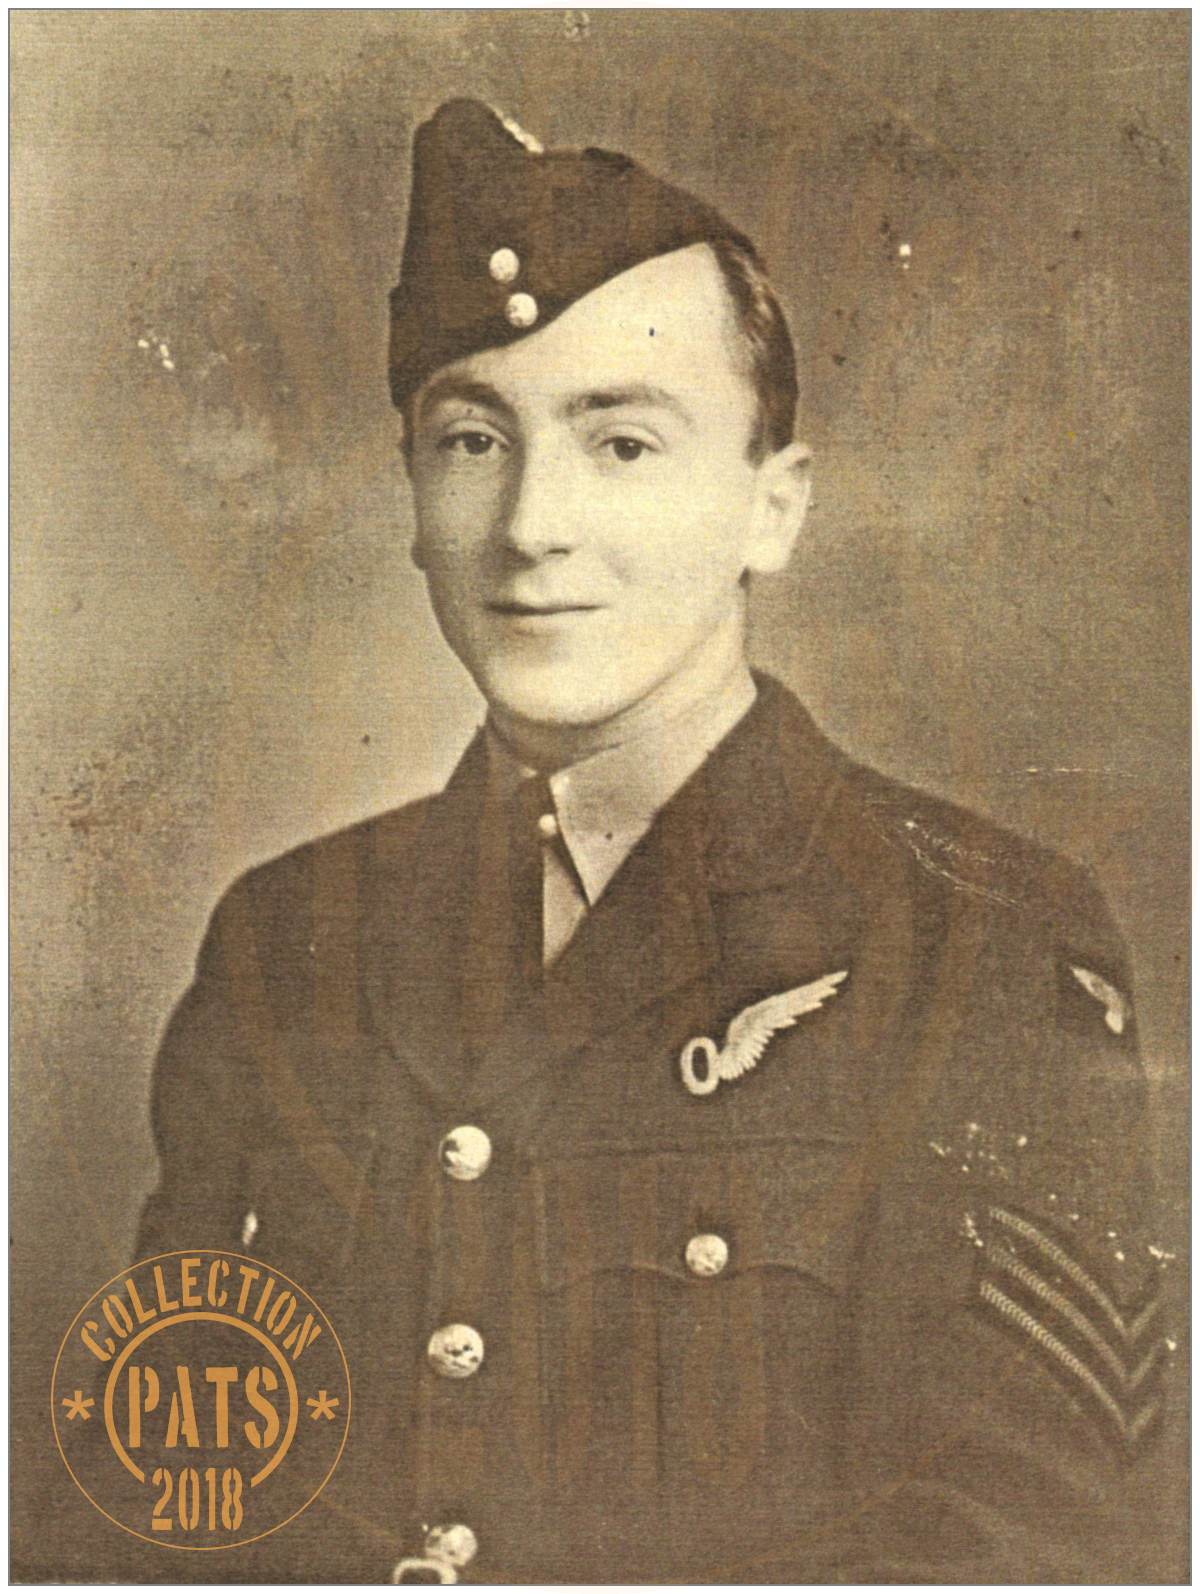 924137 - Sergeant - Observer - Gilbert Terence 'Terry' Webb - RAFVR